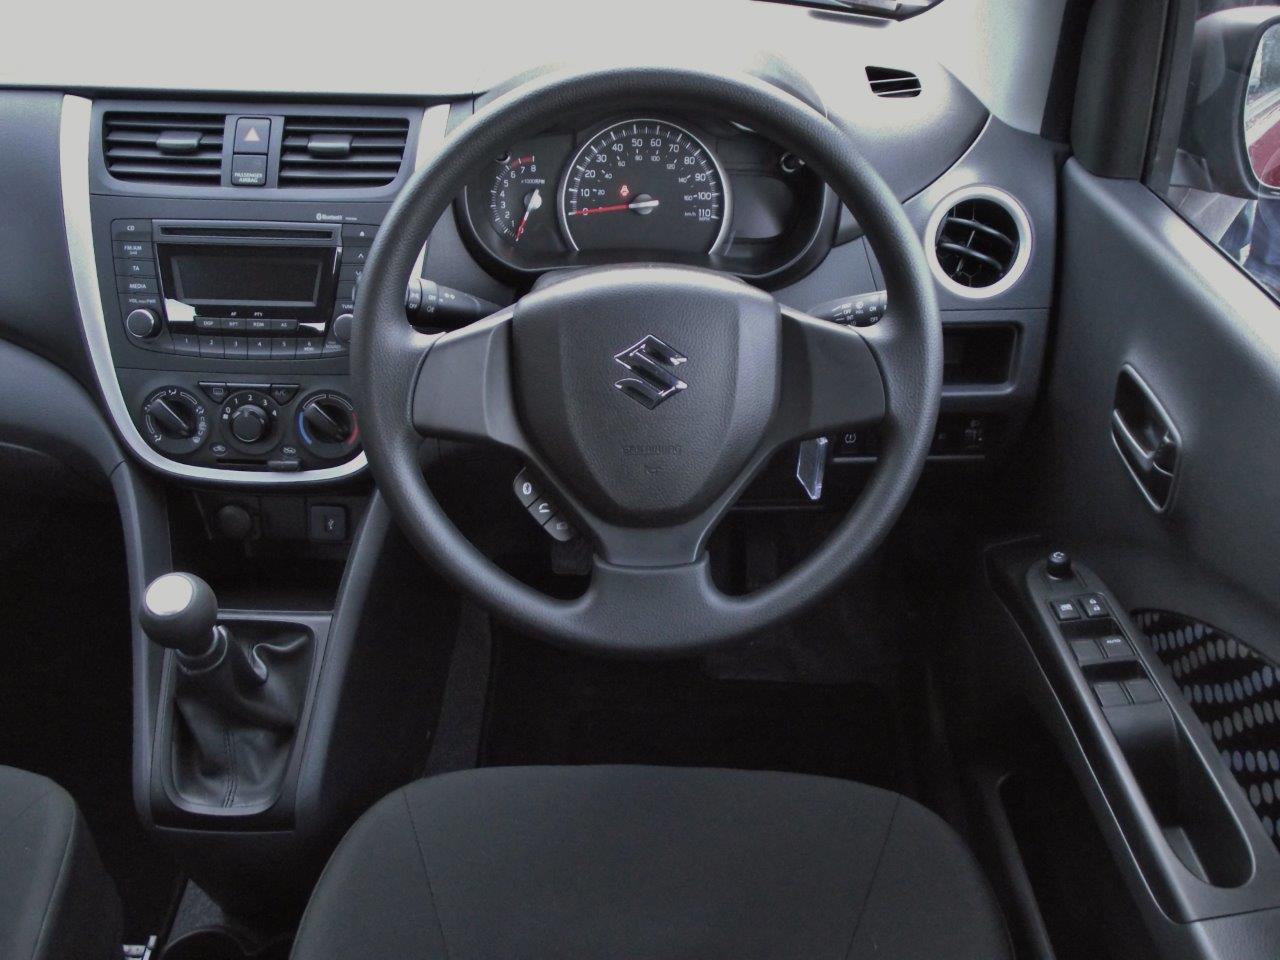 Suzuki Celerio 1.0 steering wheel